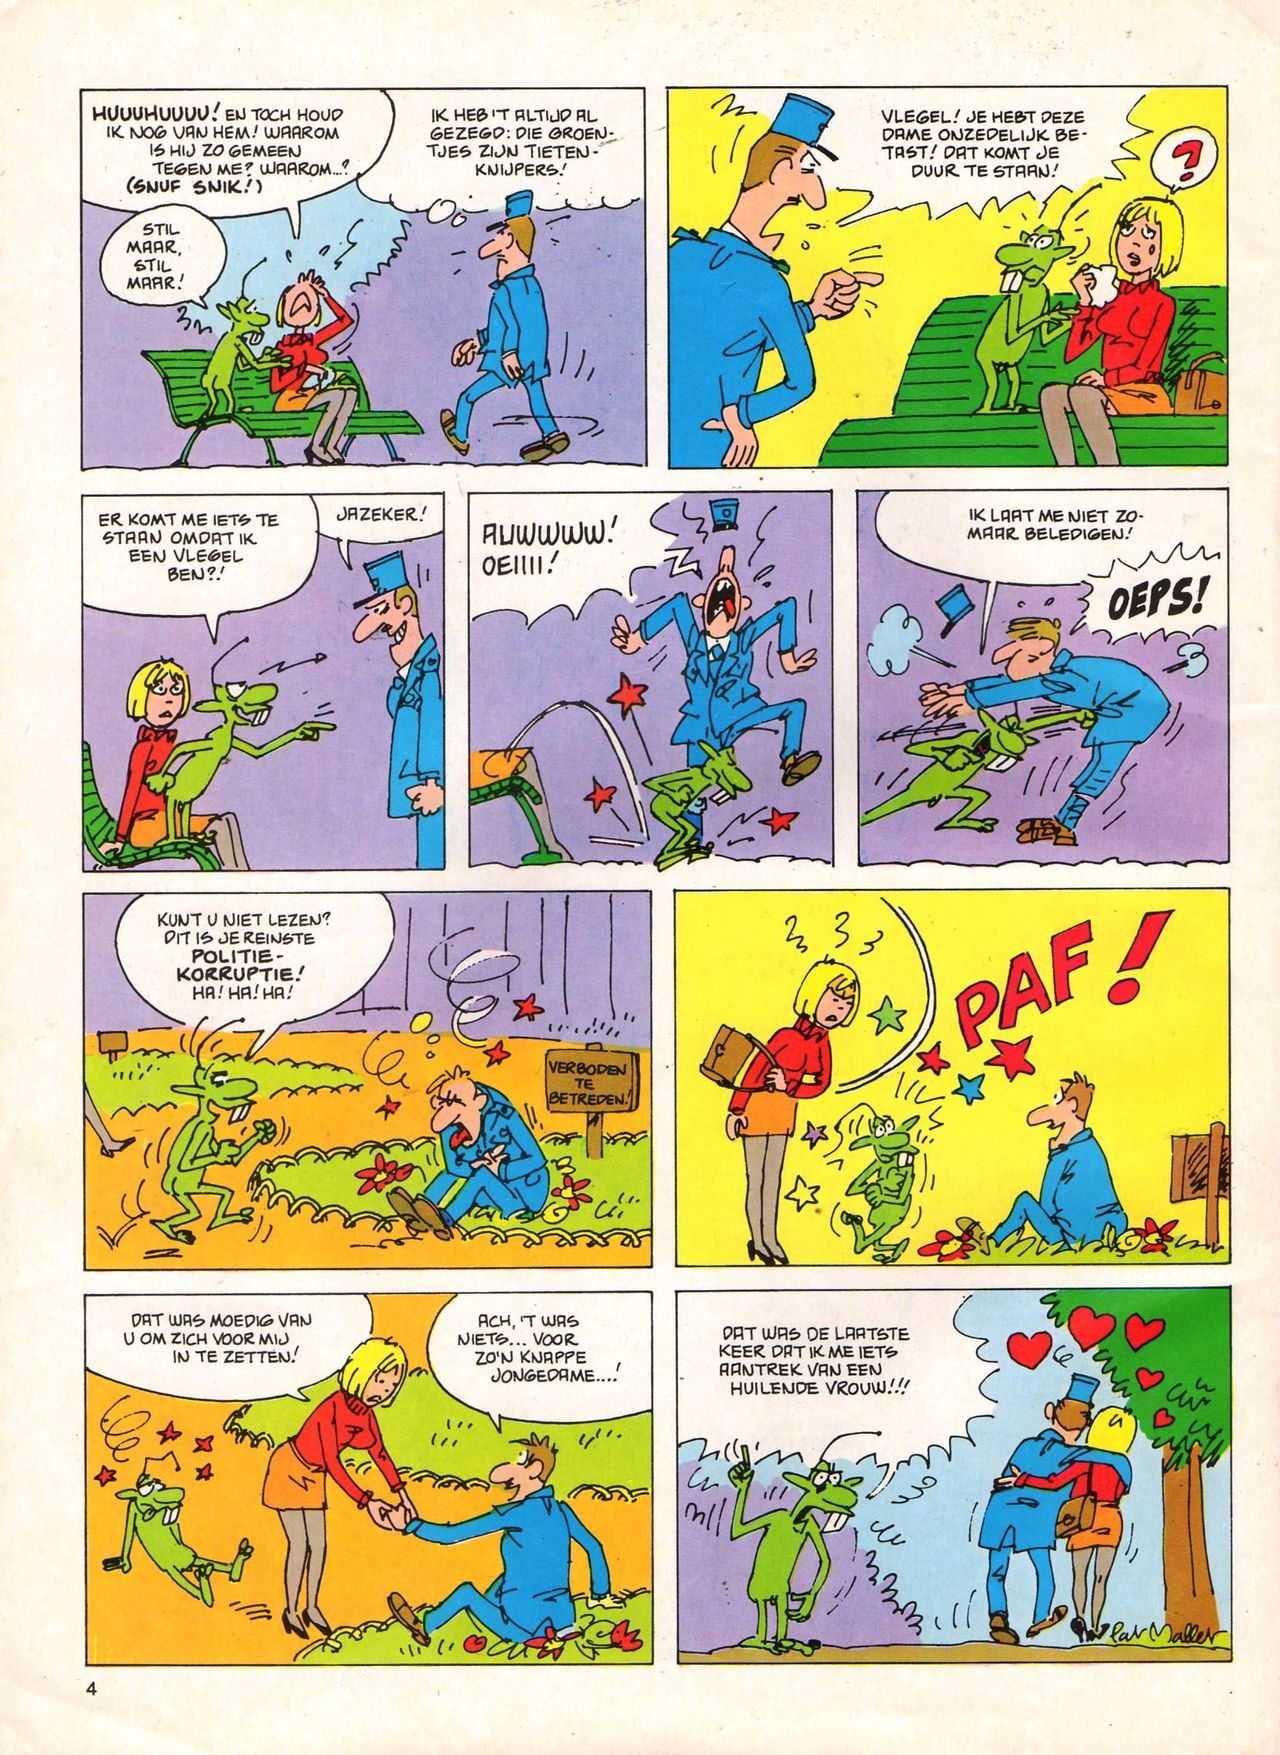 Het Is Groen En Het.. - 04 - Mag Ik Die Ballen.. OH, PARDON! (Dutch) Een oude humoristische serie van Pat Mallet 4